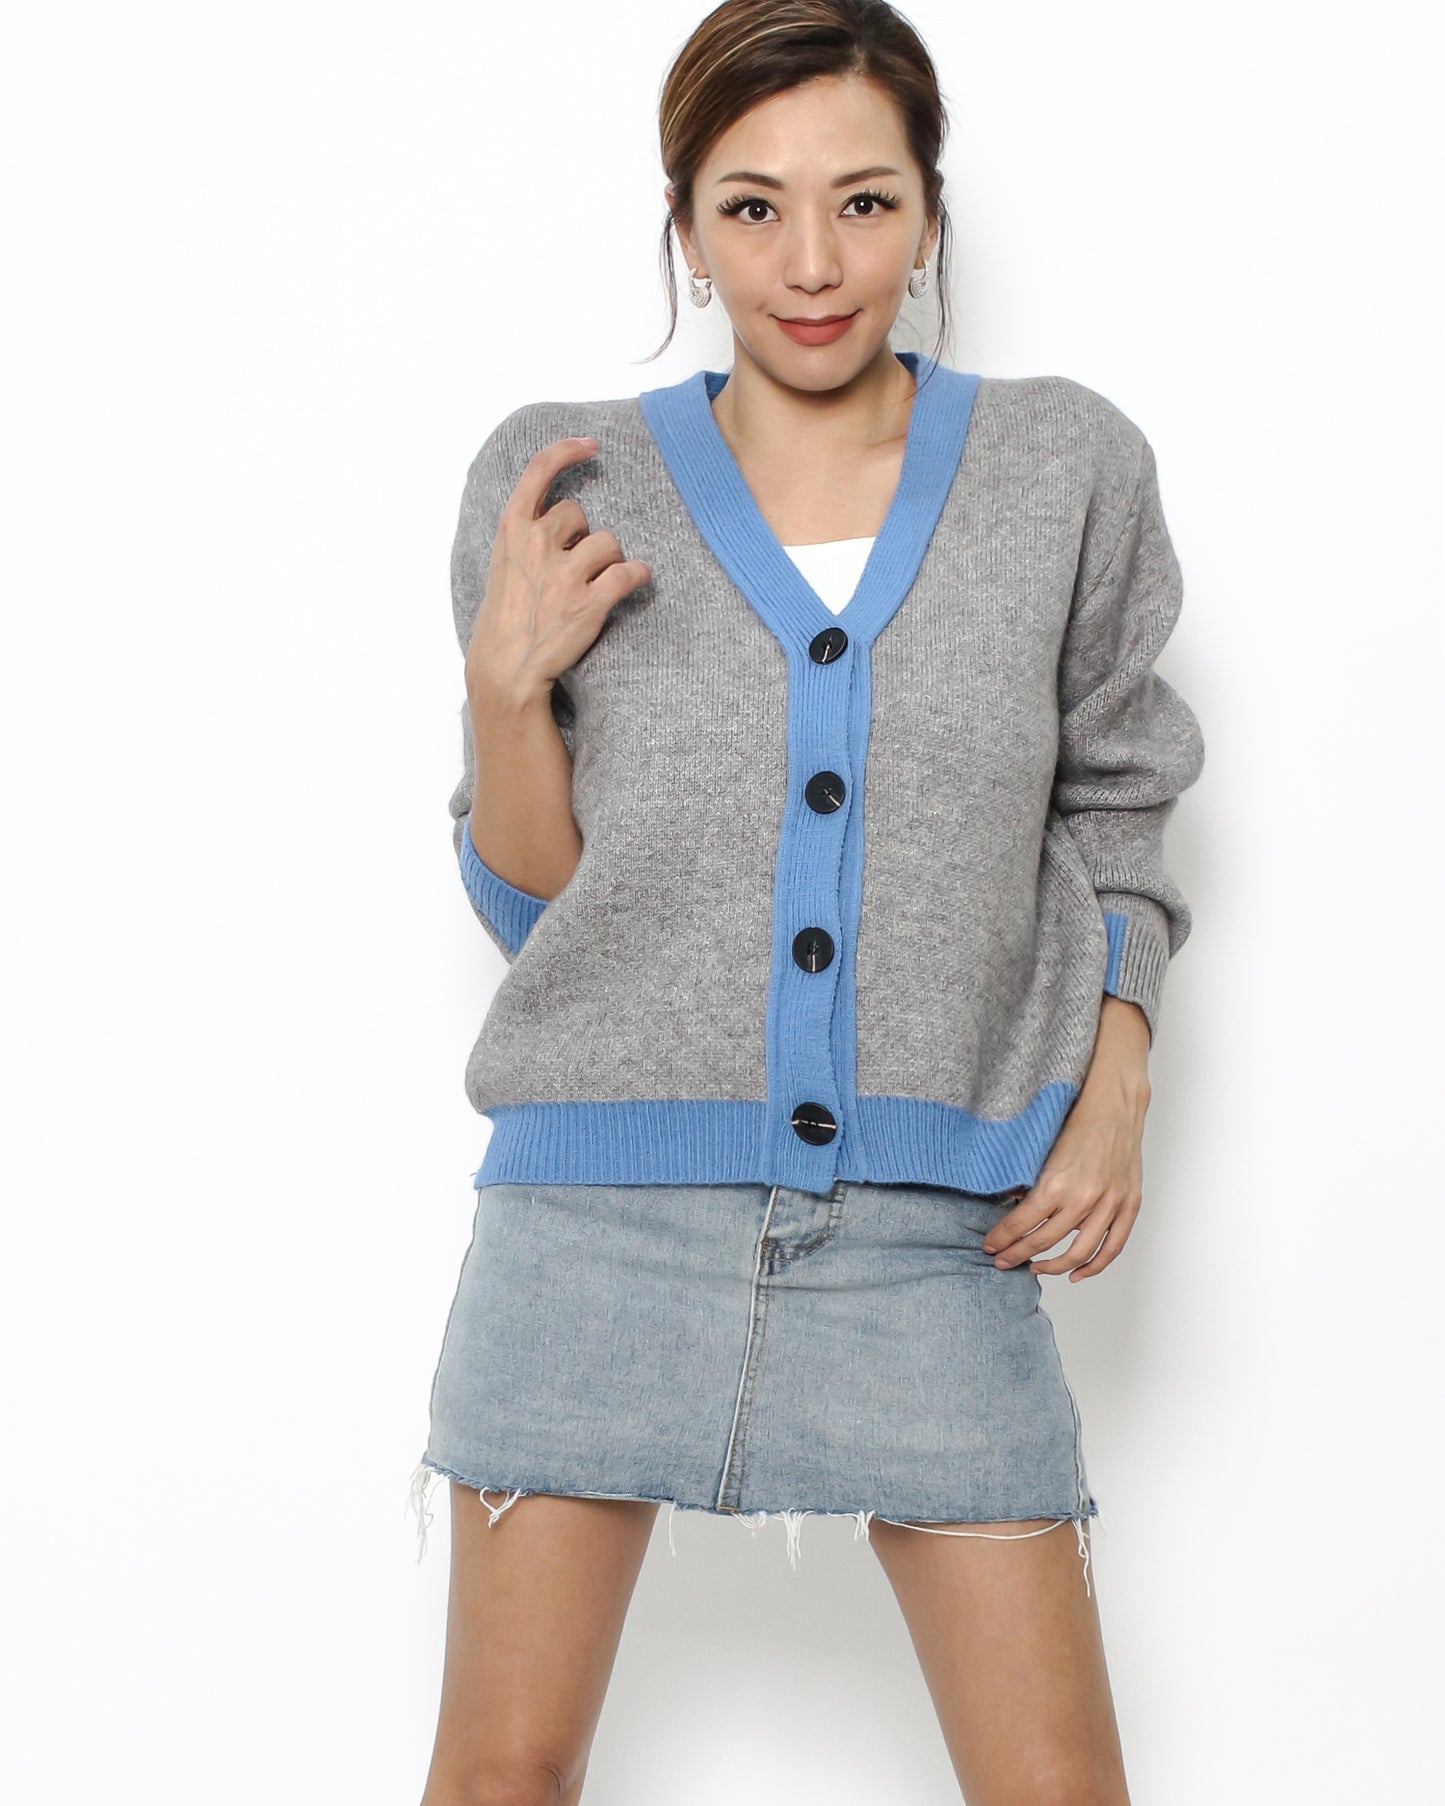 grey & blue trim knitted cardigan *pre-order*